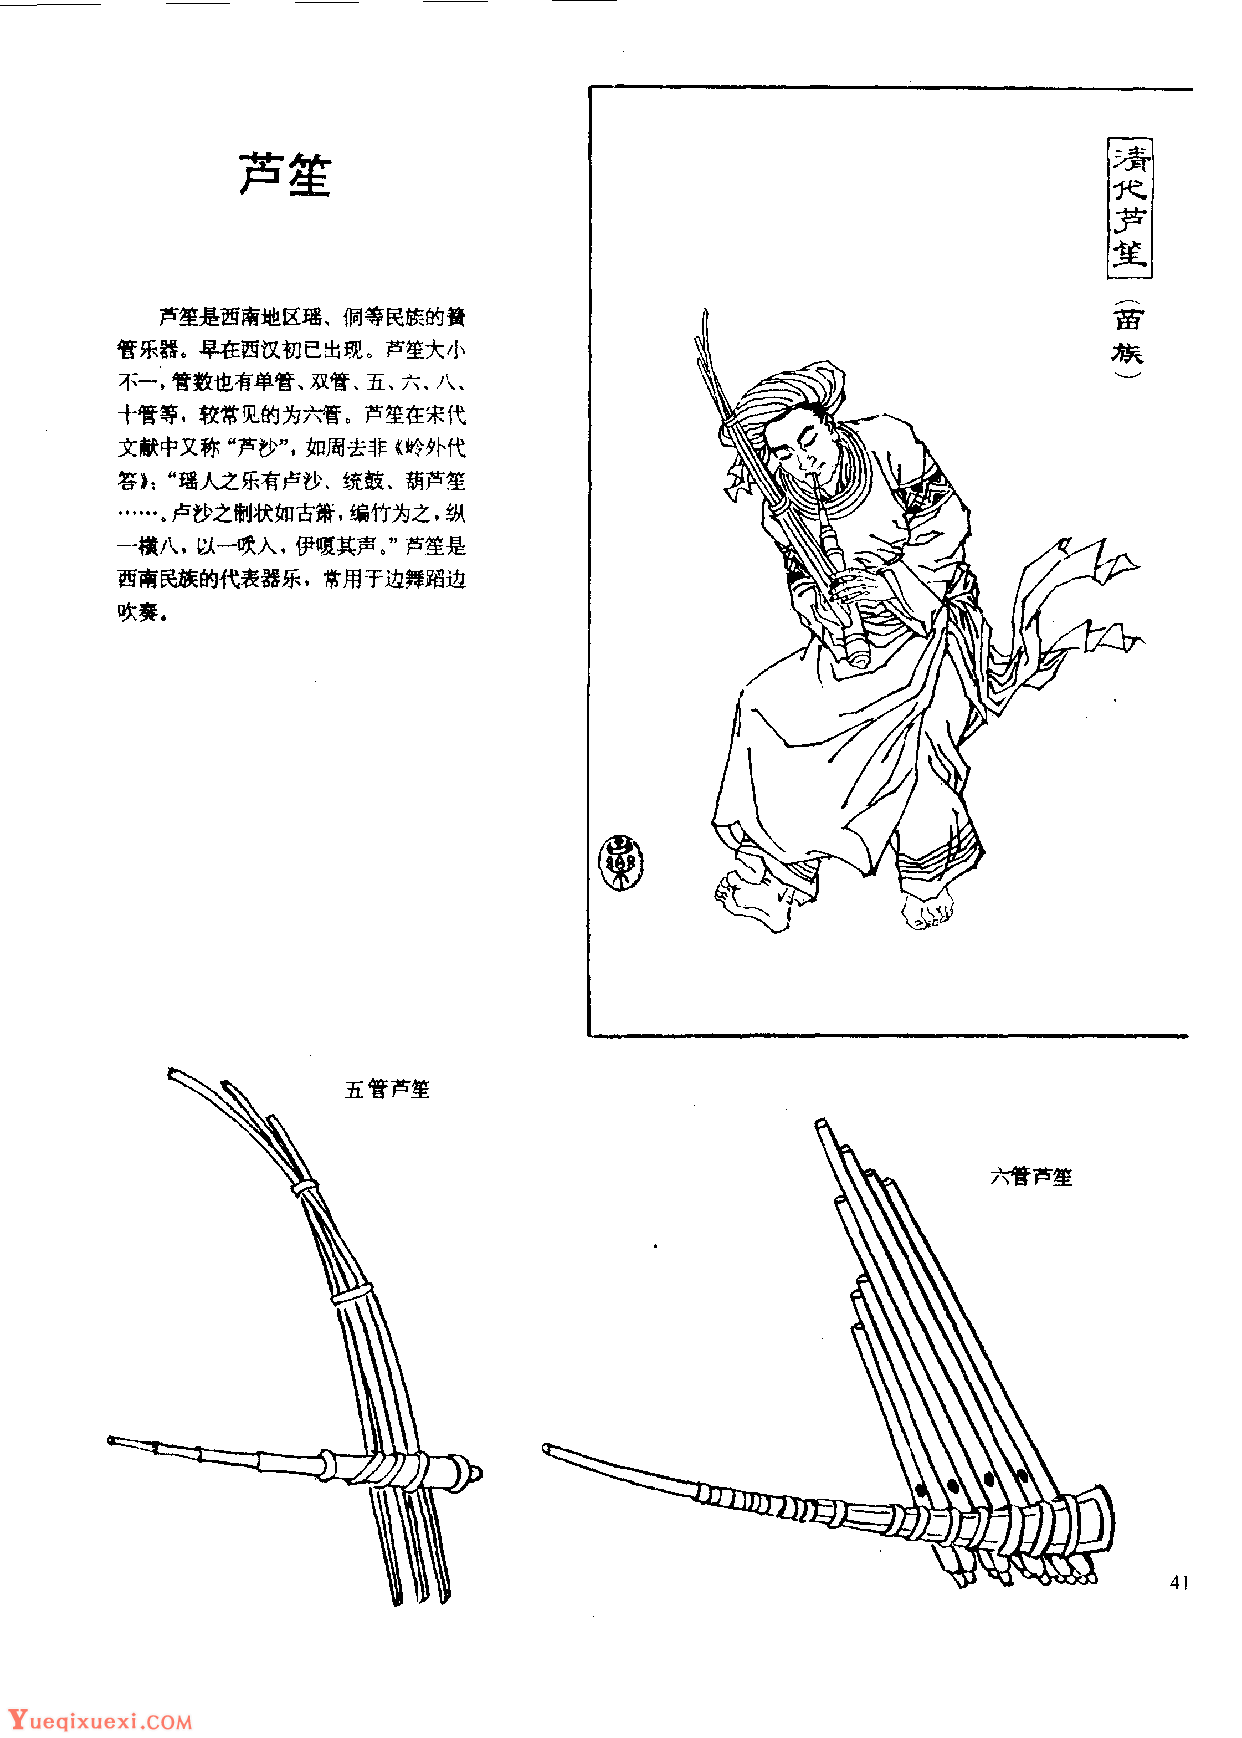 中国古代乐器《芦笙》